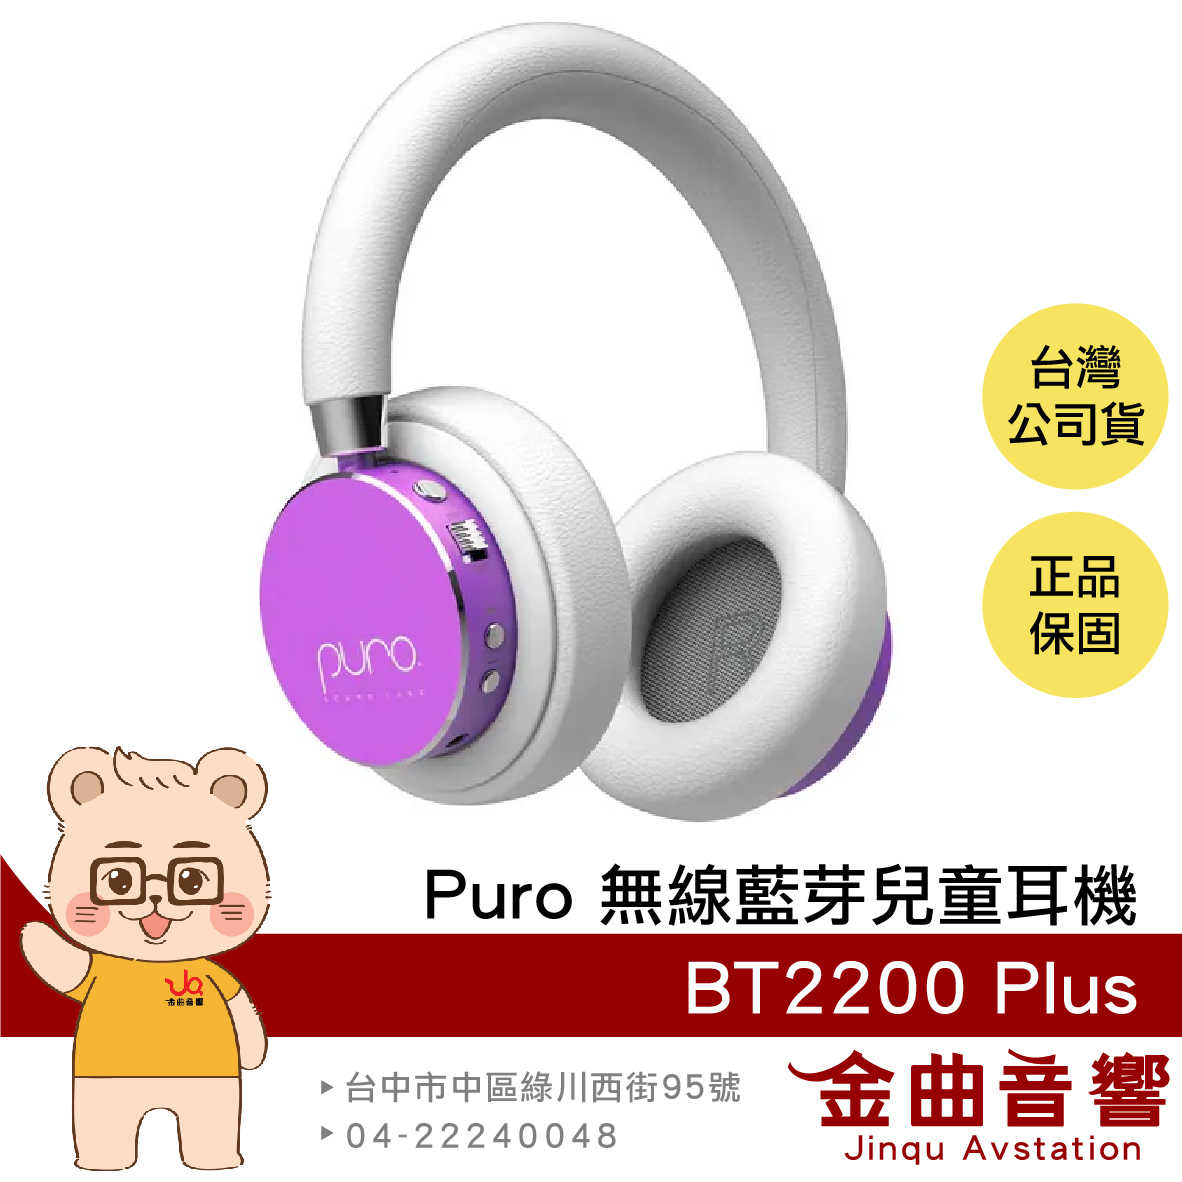 Puro BT2200 Plus 紫色 安全音量 音樂分享 可替換耳罩 耳罩式 無線 藍牙 兒童耳機 | 金曲音響